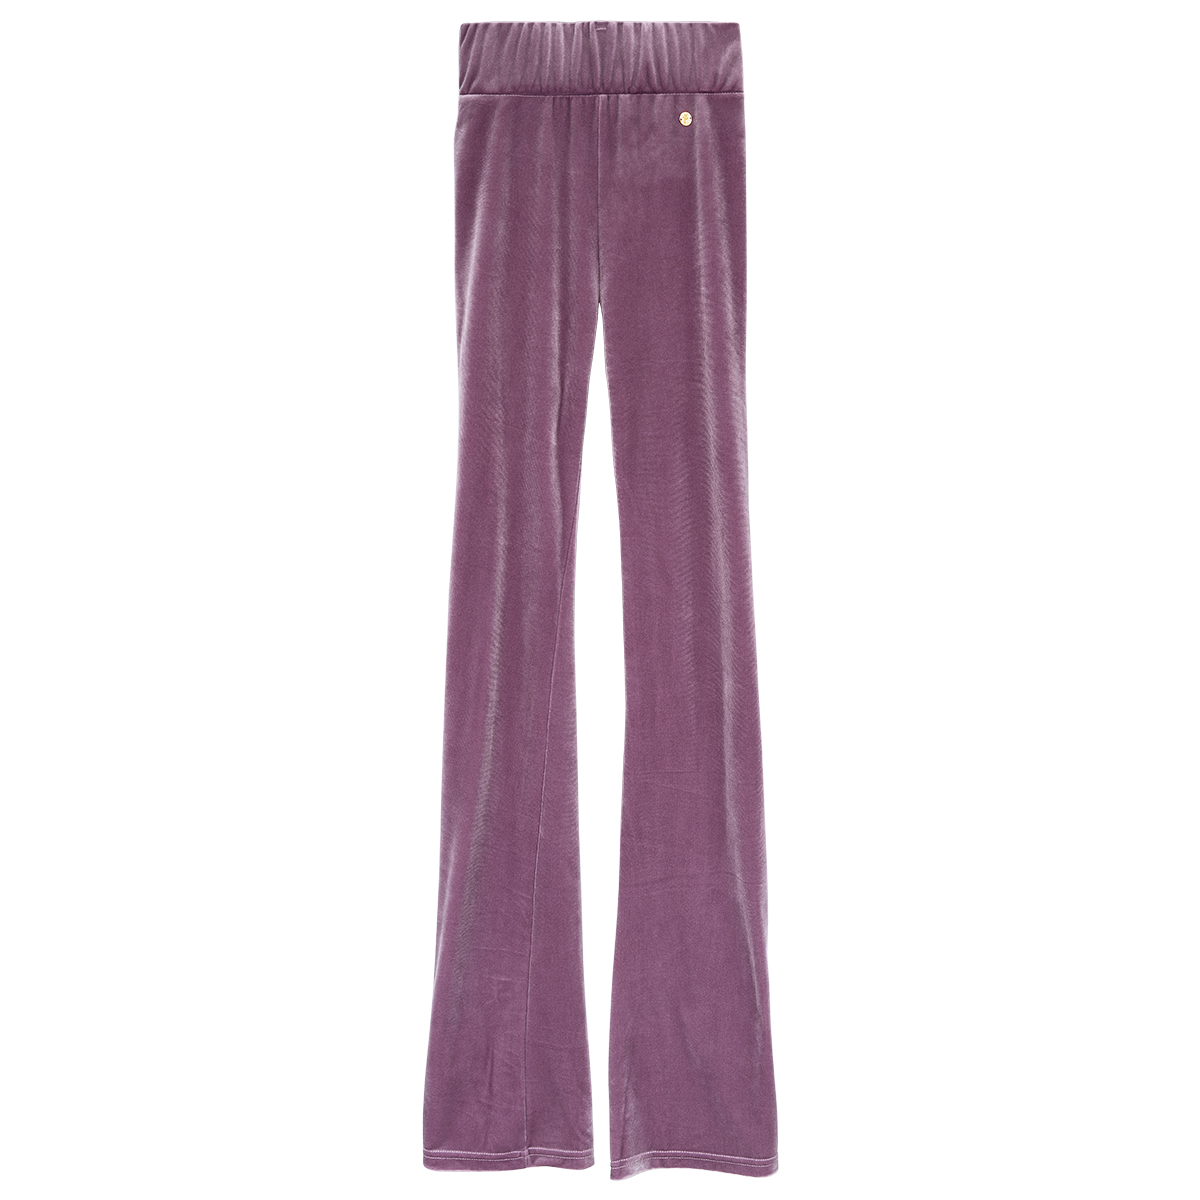 Velvet flared pants